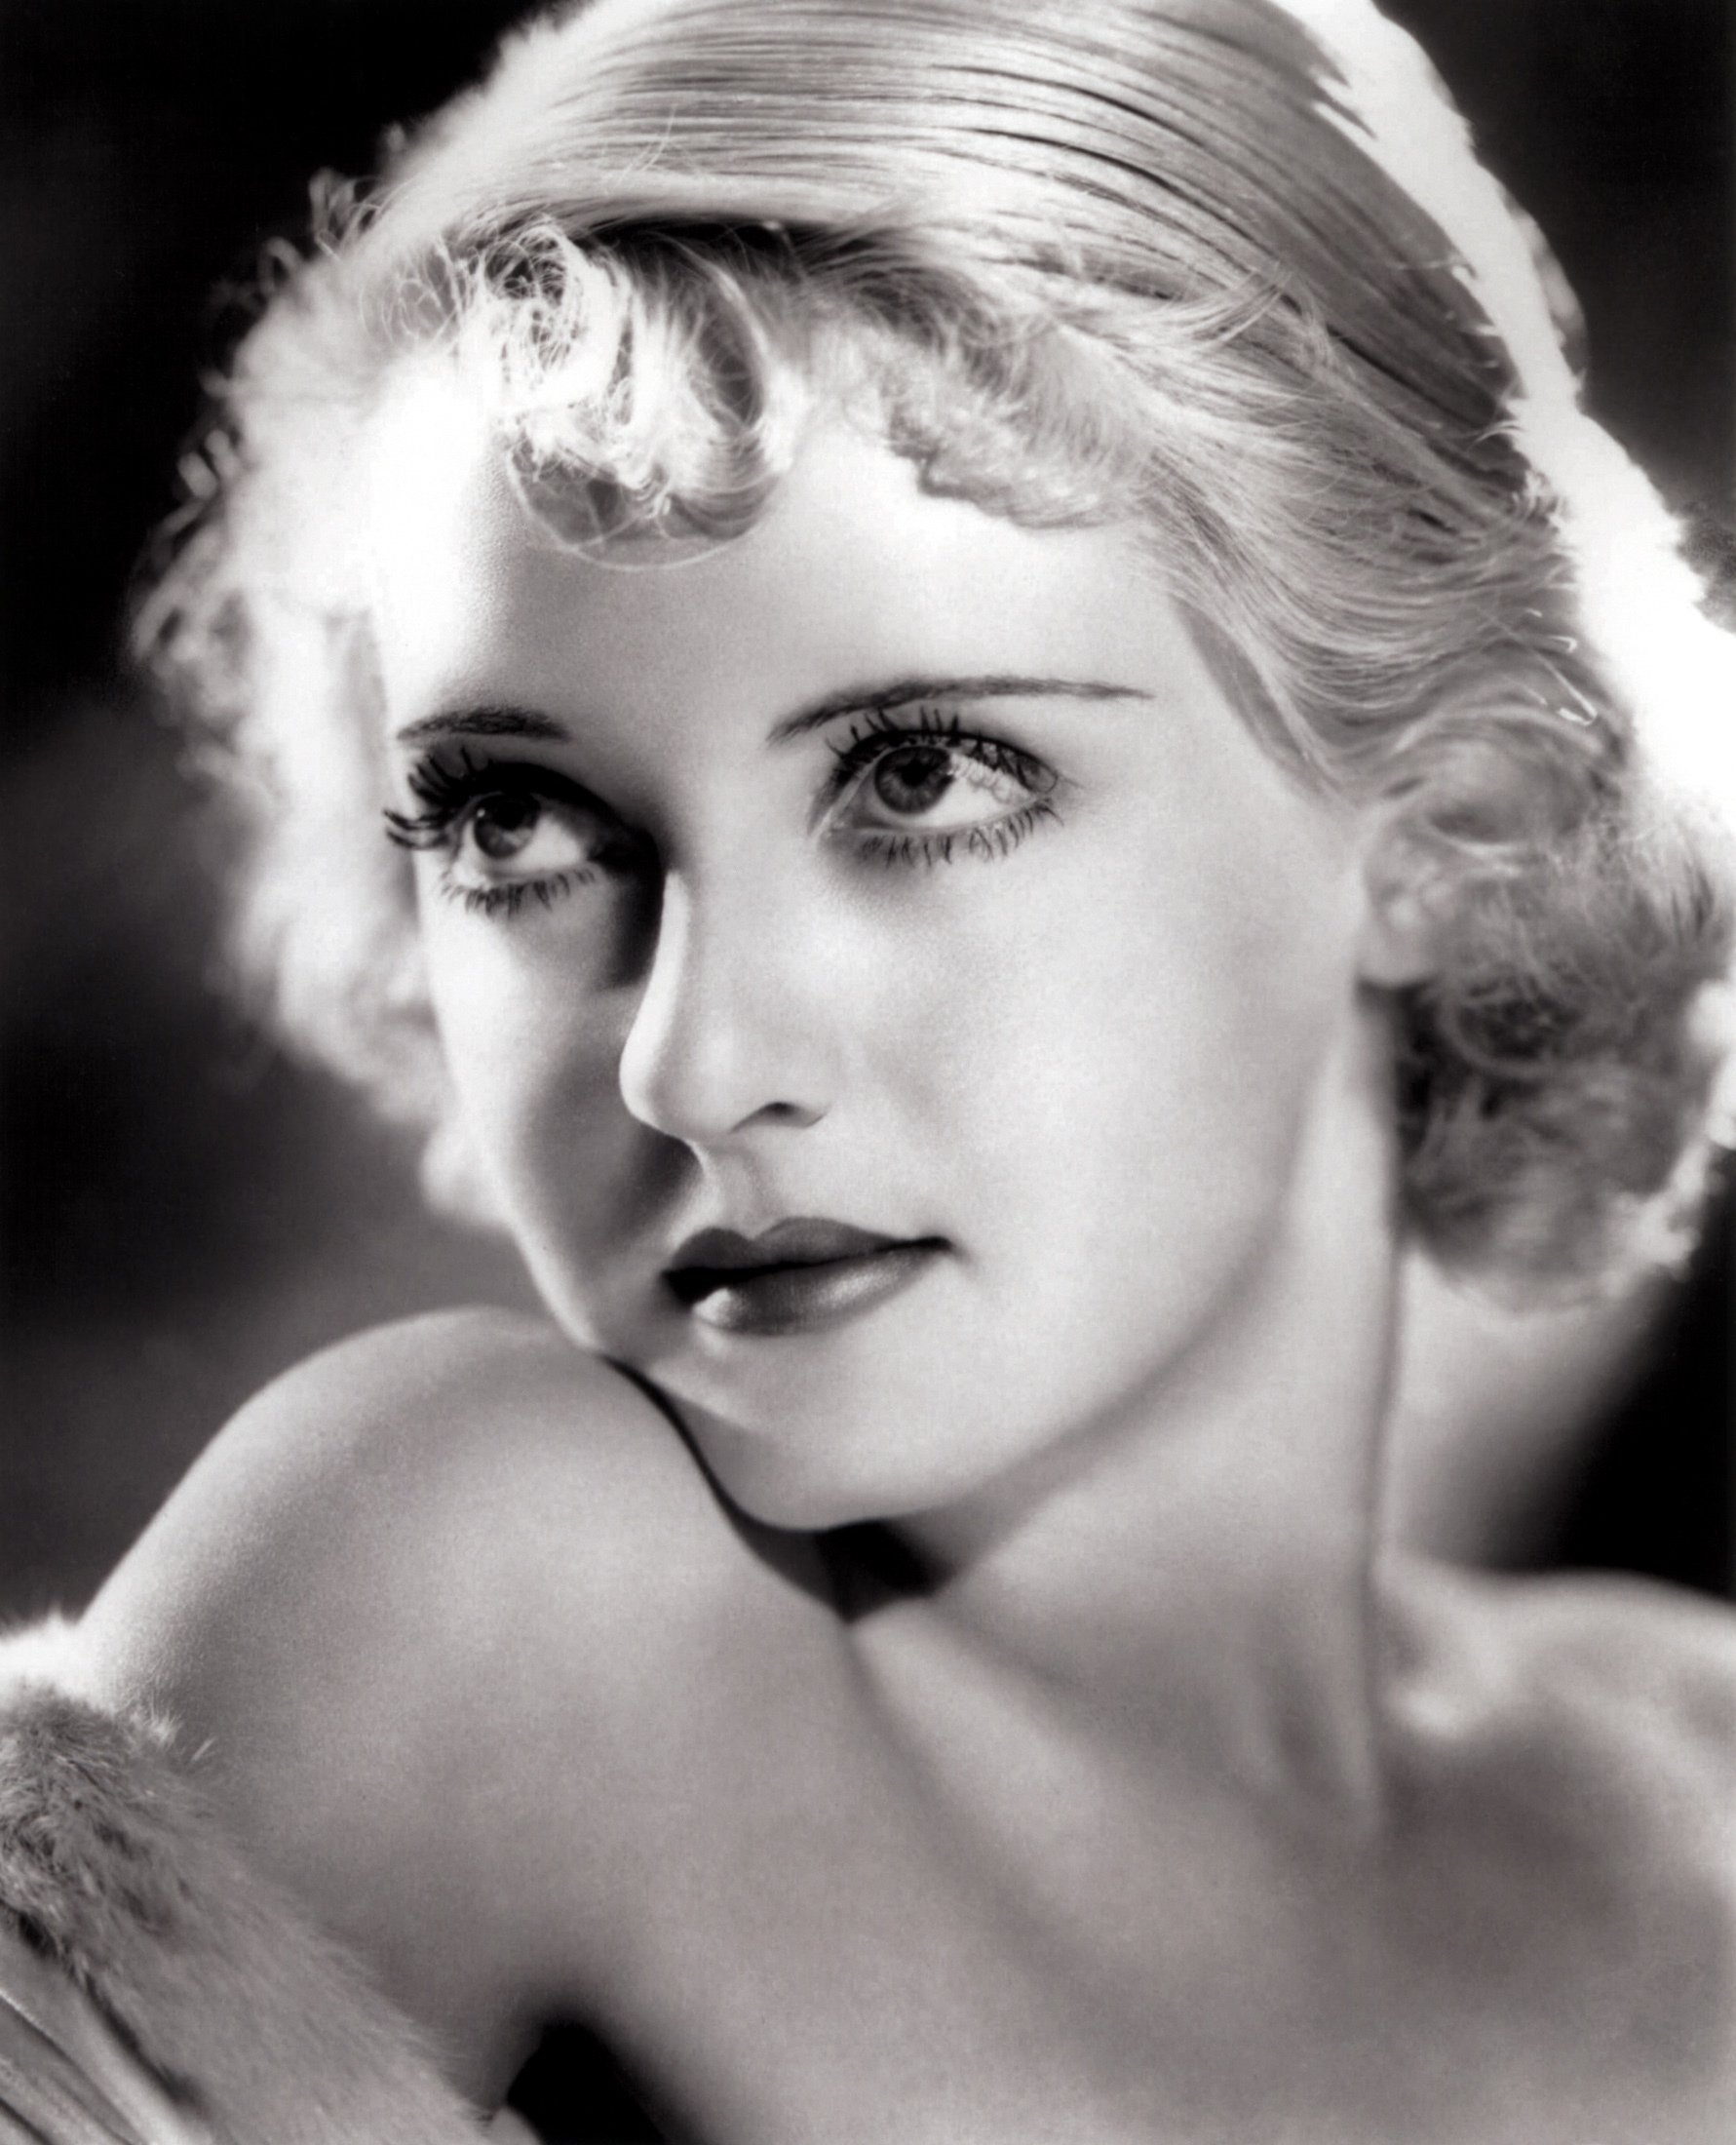 贝蒂·戴维斯 bette davis: 1936年 第8届奥斯卡金像奖 最佳女主角